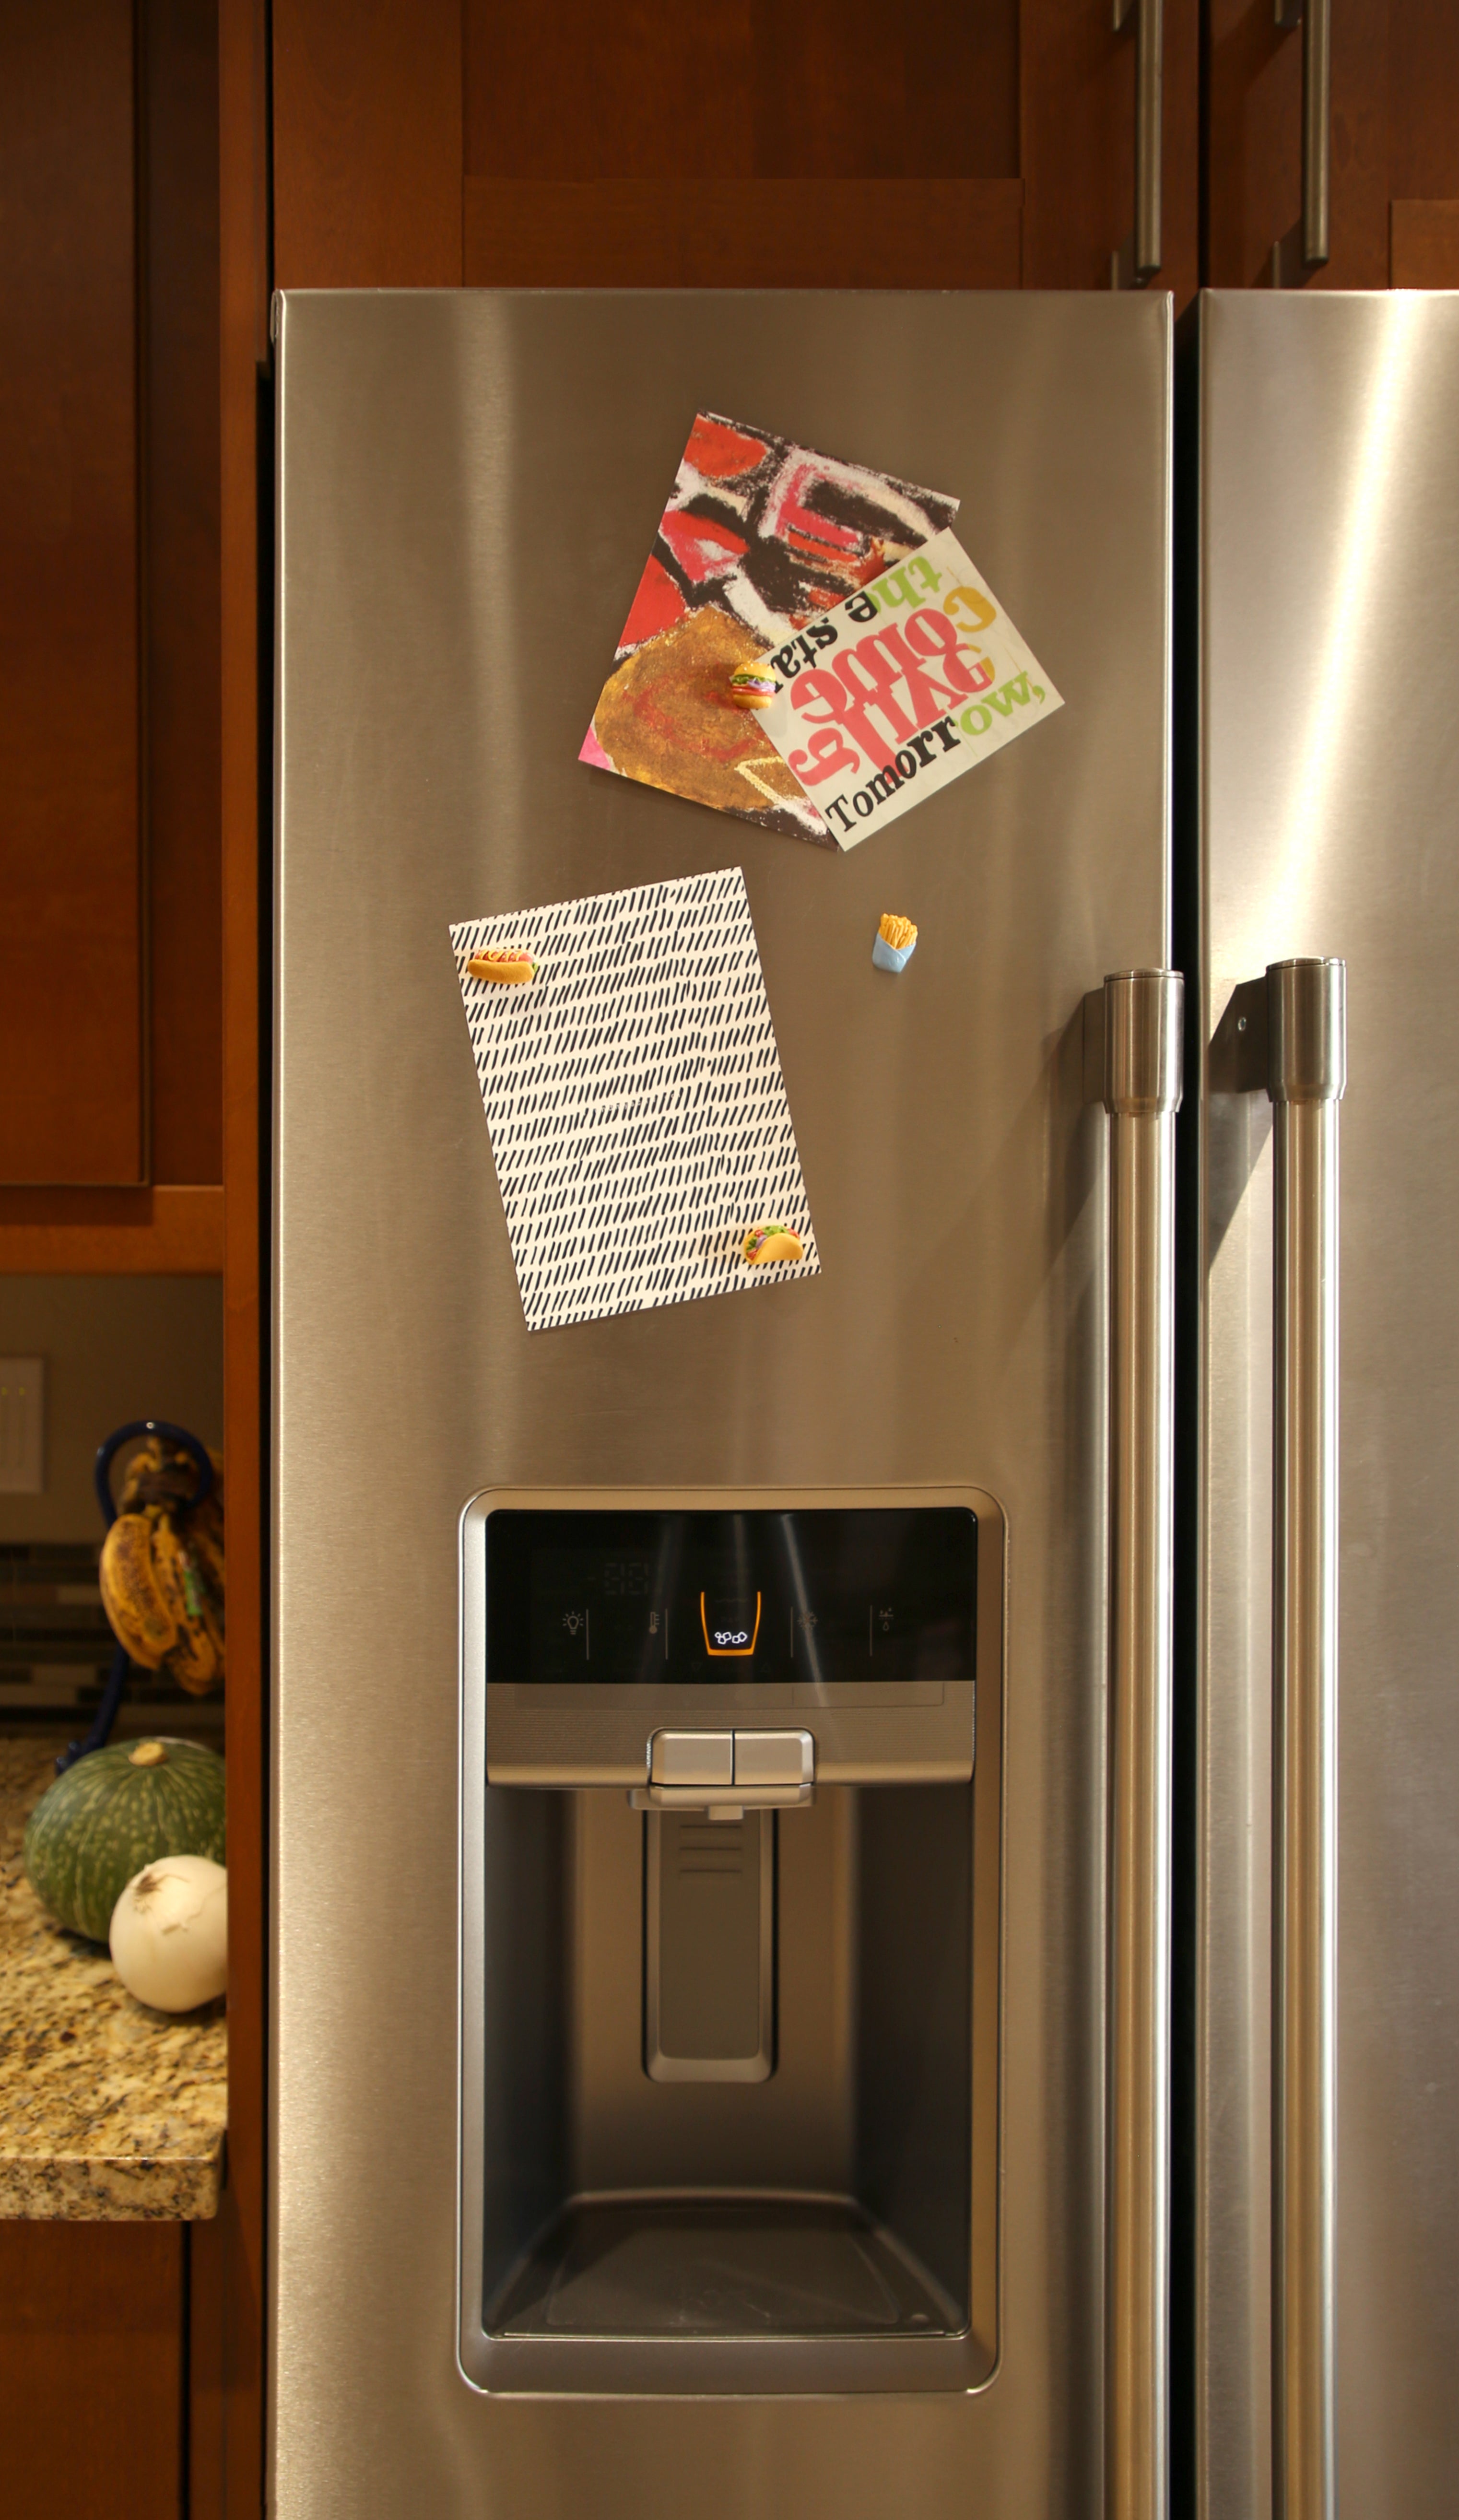 Looney Tunes Tweety Bird Kitchen Refrigerator Locker Button Magnet